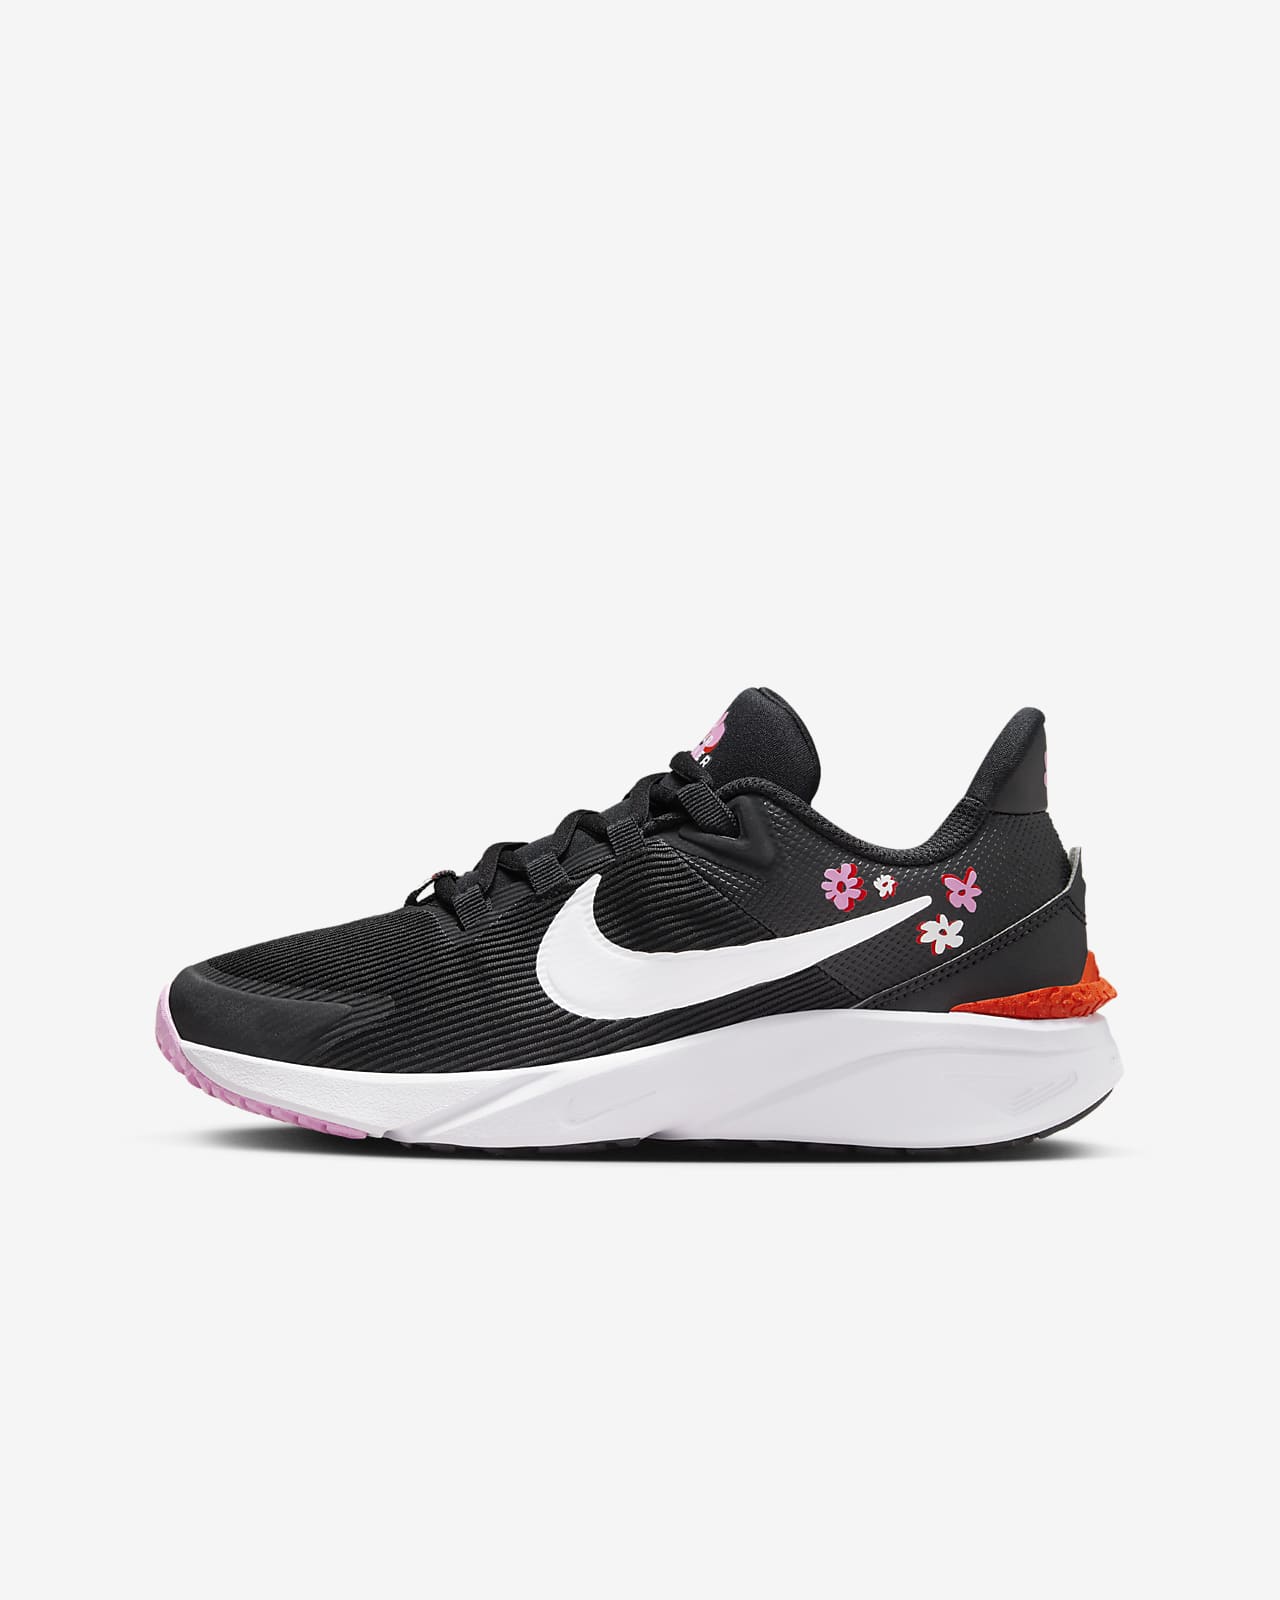 Παπούτσια για τρέξιμο σε δρόμο Nike Star Runner 4 NN SE για μεγάλα παιδιά